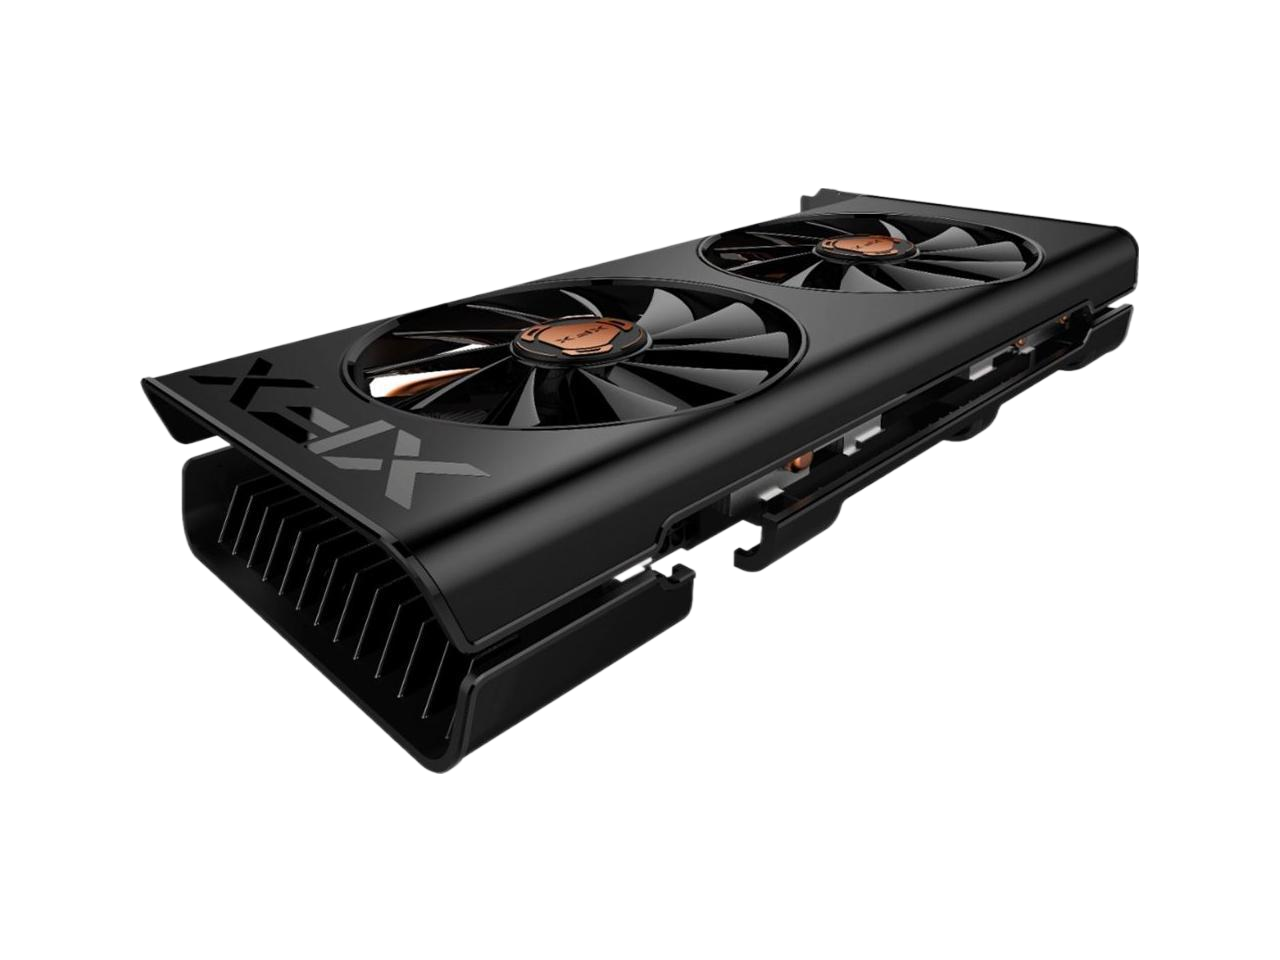 XFX - THICC II Pro AMD Radeon RX 5500 XT 8GB GDDR6 PCI Express 4.0 Graphics Card Black RX-55XT8DFDR